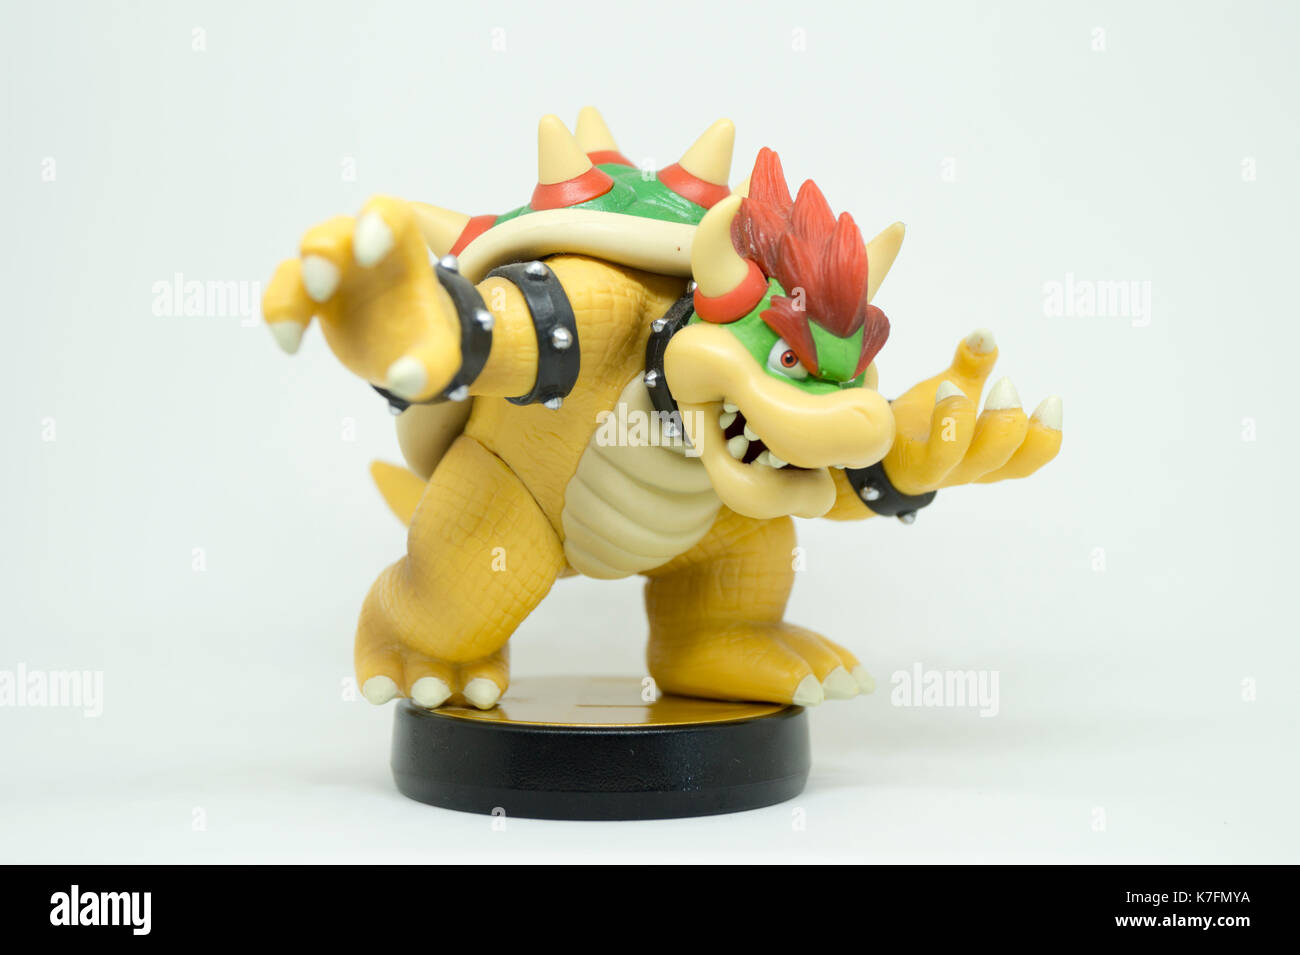 Nintendo Super Smash Bros Amiibo Collection Figure Bowser Stock Photo -  Alamy